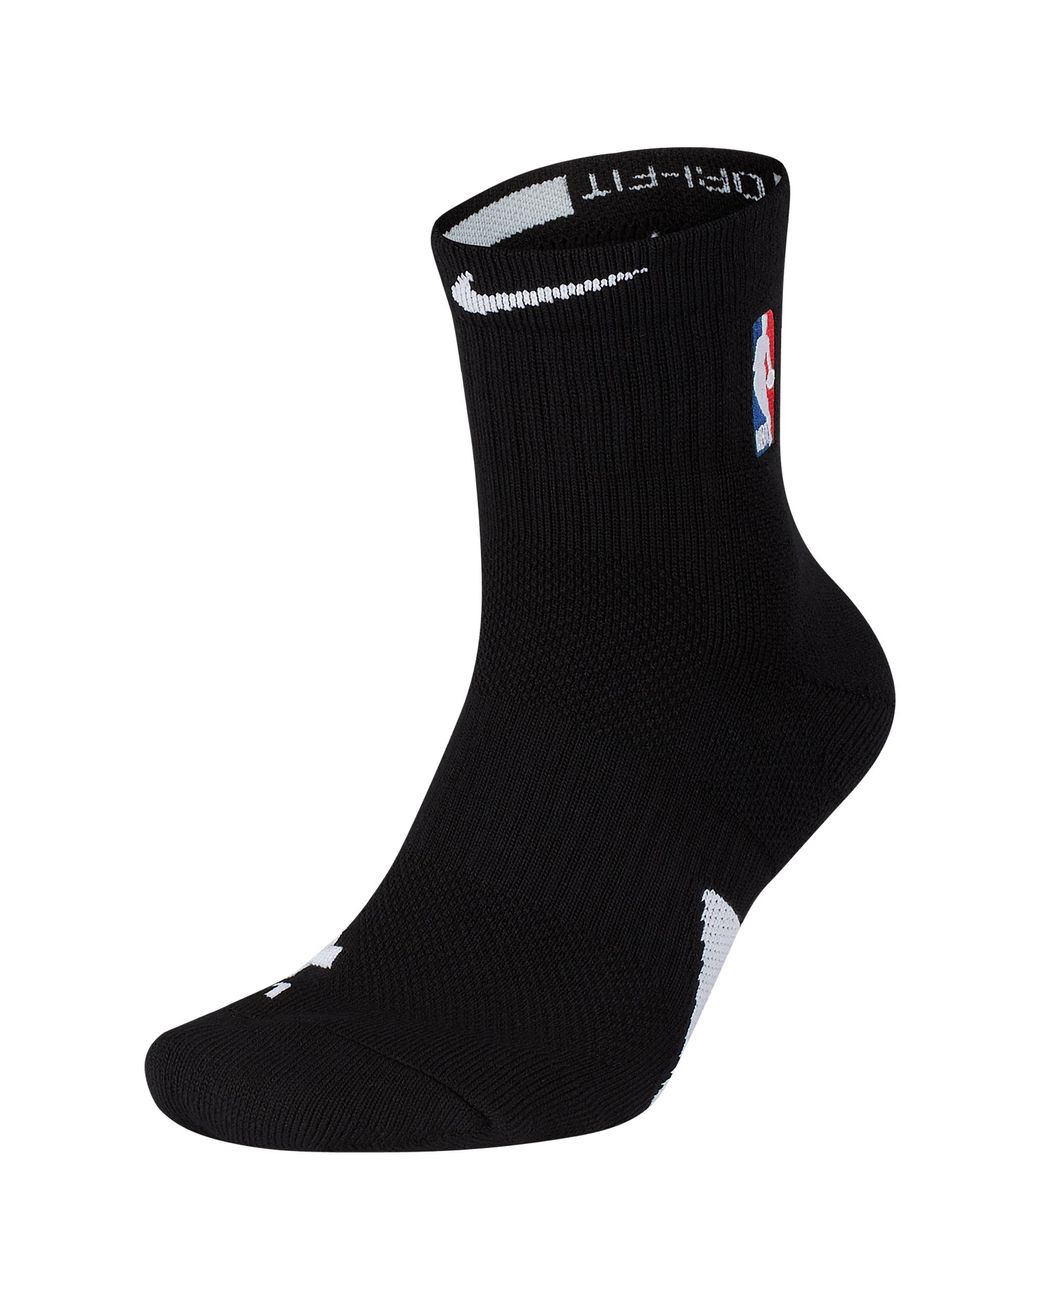 Nike Nba League Gear Nba Elite Mid Socks in Black for Men - Save 22% - Lyst